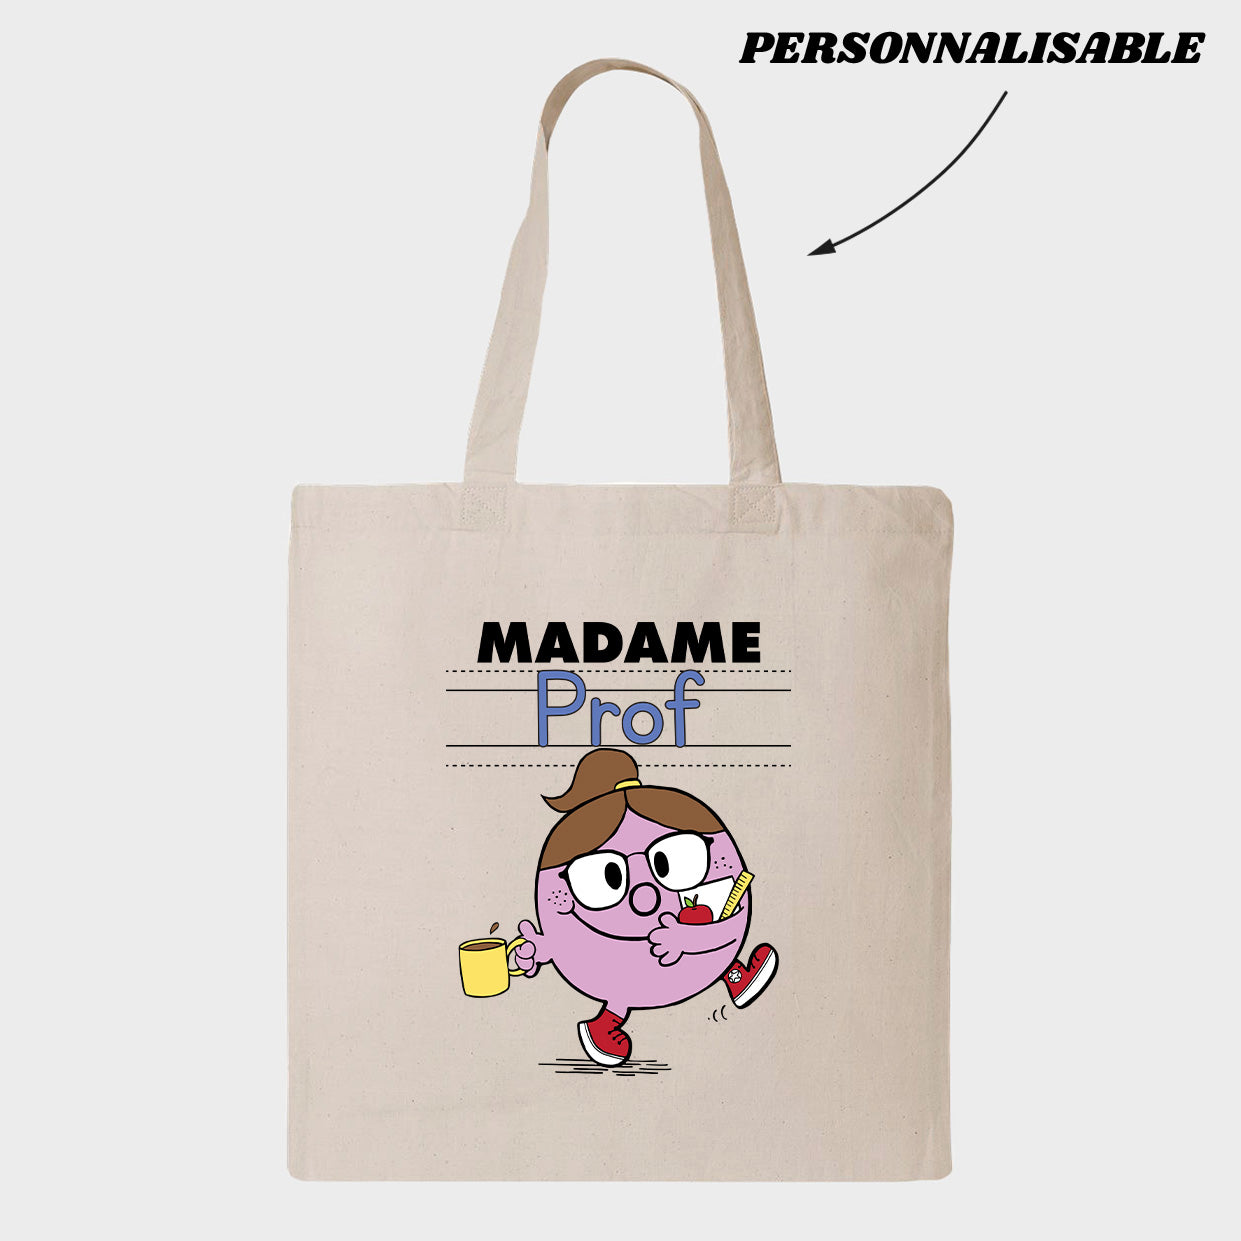 MADAME *PROFESSIONEL DE L'ENSEIGNEMENT* tote bag personnalisable - tamelo boutique